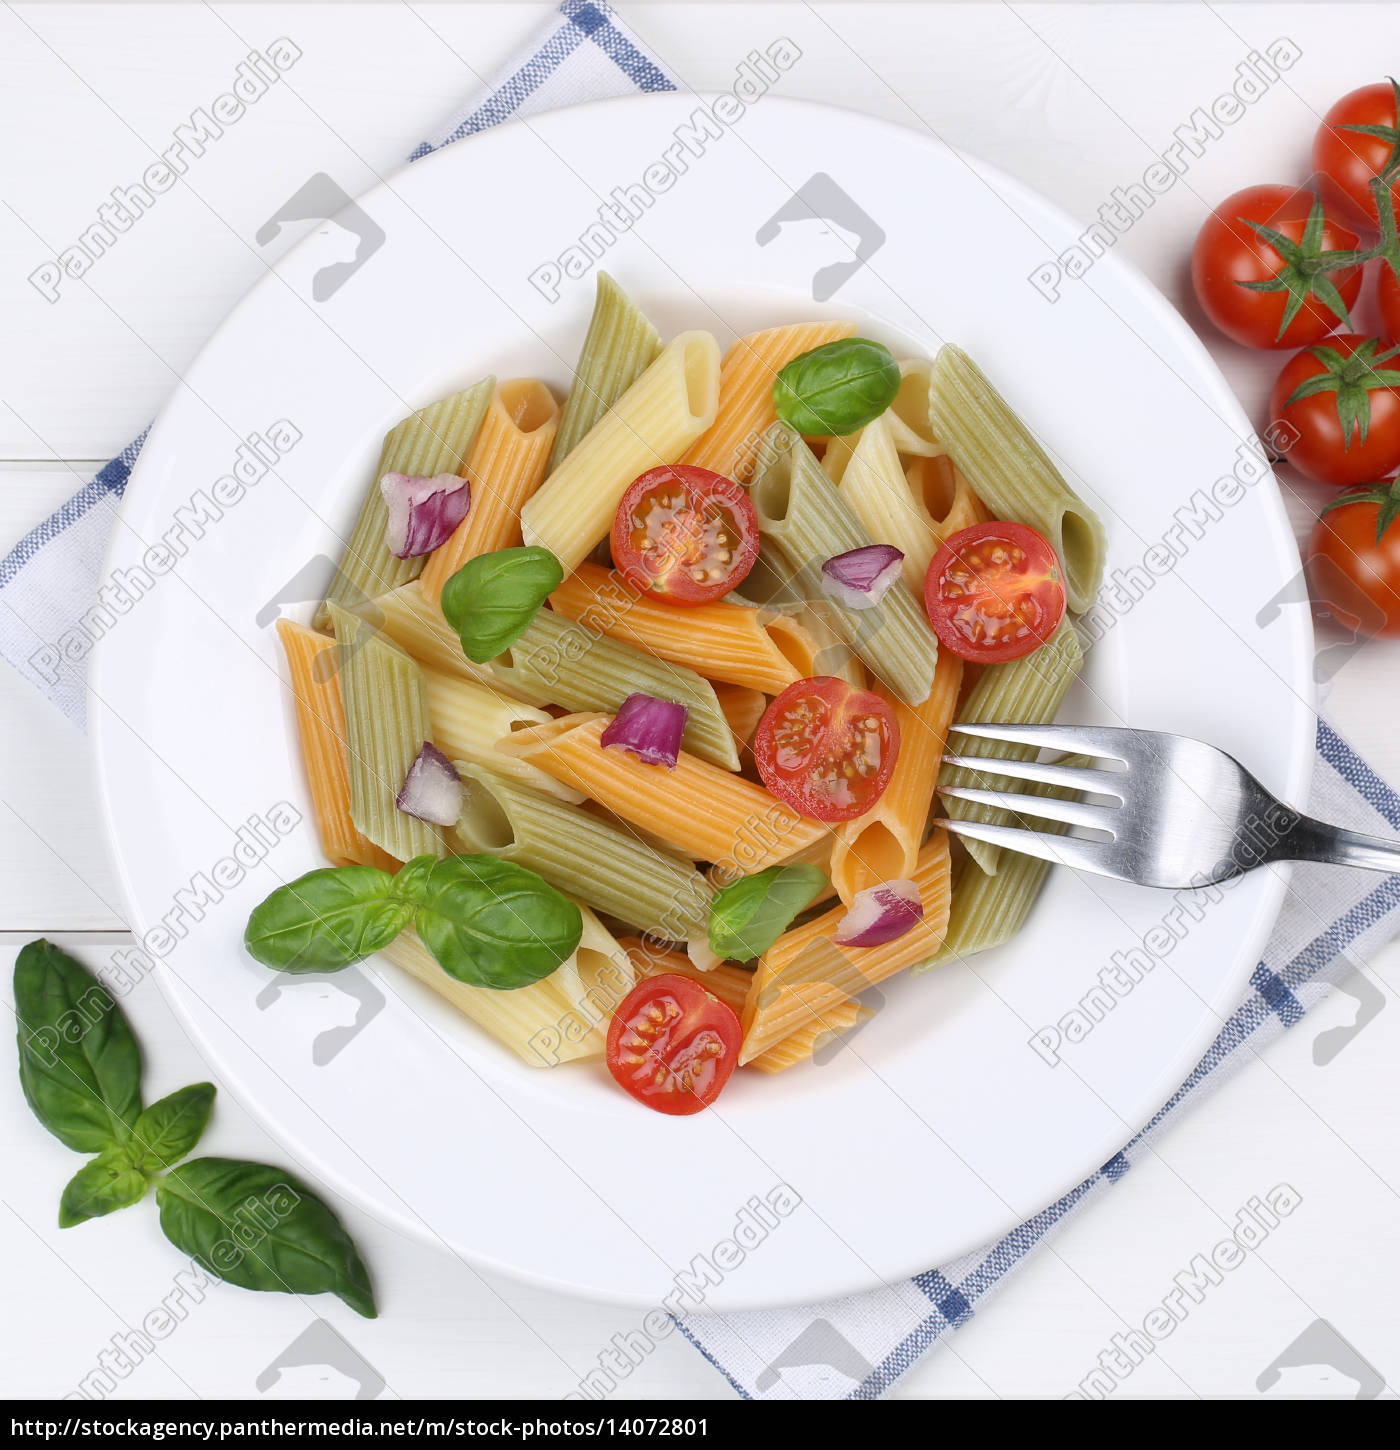 Italienisches Essen Bunte Penne Rigate Nudeln Pasta Lizenzfreies Bild 14072801 Bildagentur Panthermedia